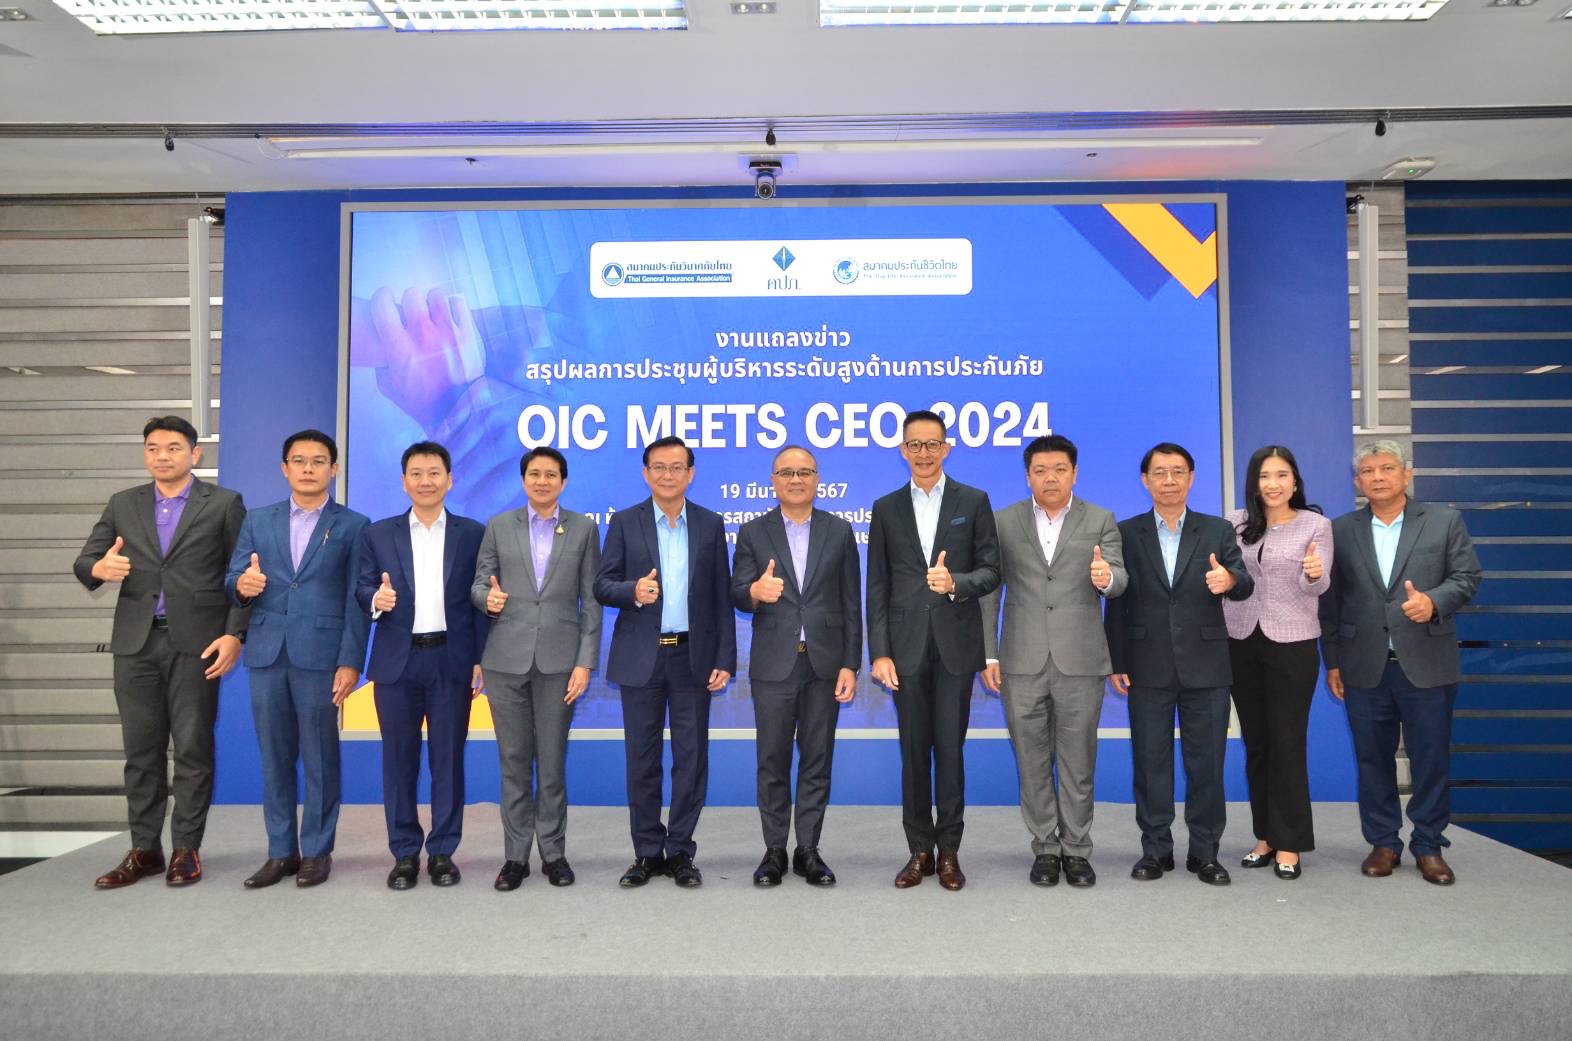 สมาคมประกันชีวิตไทยร่วมงานแถลงข่าวสรุปผลการประชุมผู้บริหารระดับสูงด้านการประกันภัย (OIC Meets CEO 2024)